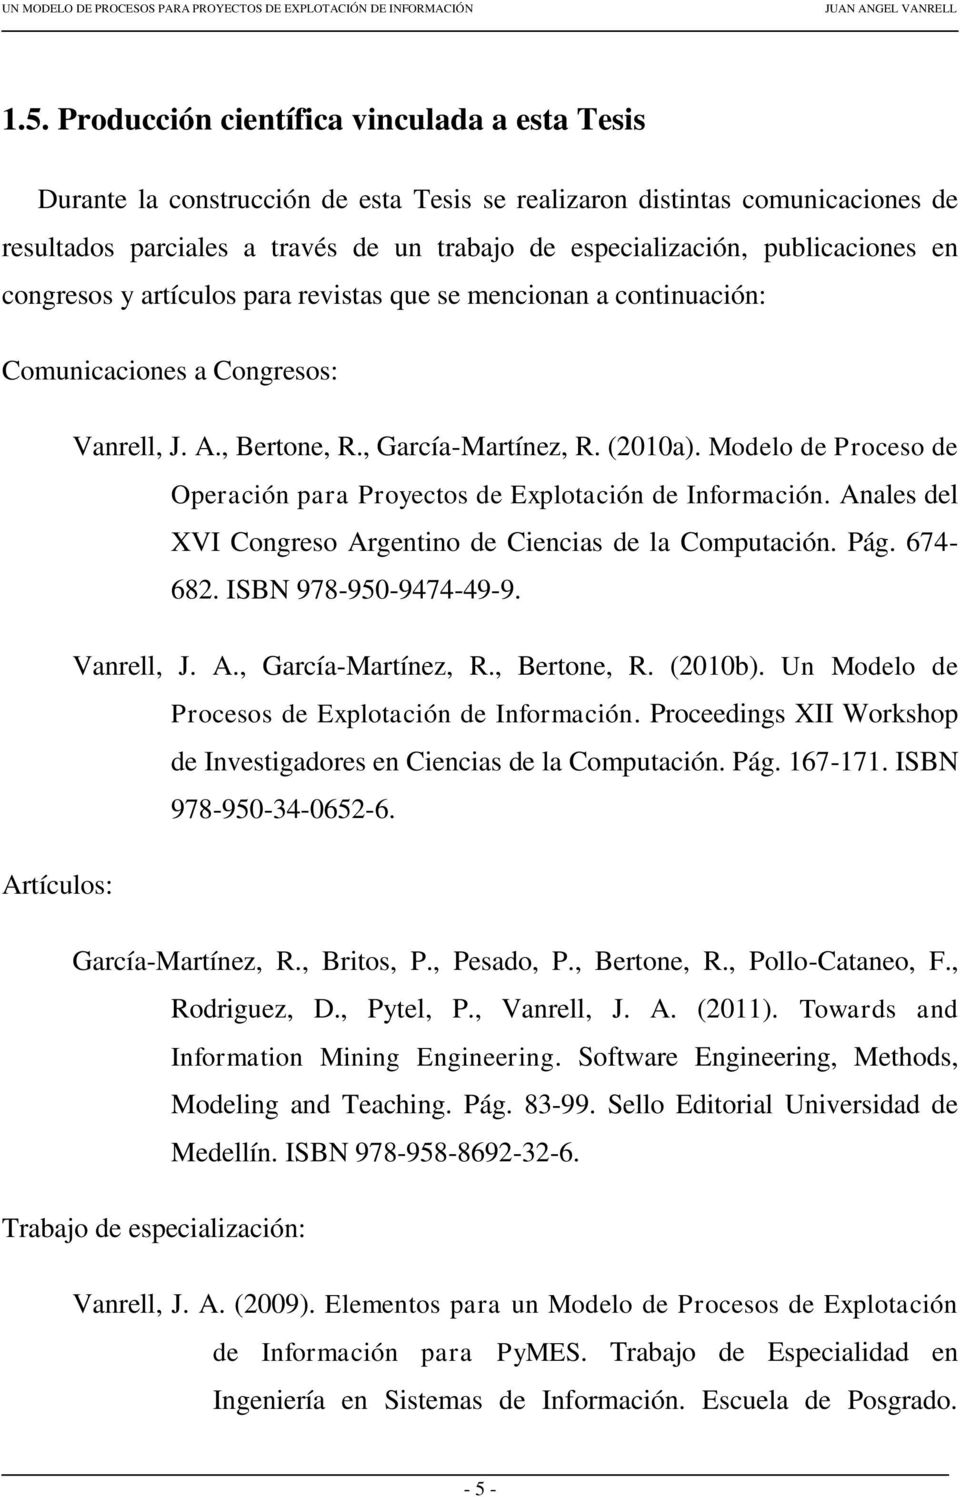 Modelo de Proceso de Operación para Proyectos de Explotación de Información. Anales del XVI Congreso Argentino de Ciencias de la Computación. Pág. 674-682. ISBN 978-950-9474-49-9. Vanrell, J. A., García-Martínez, R.